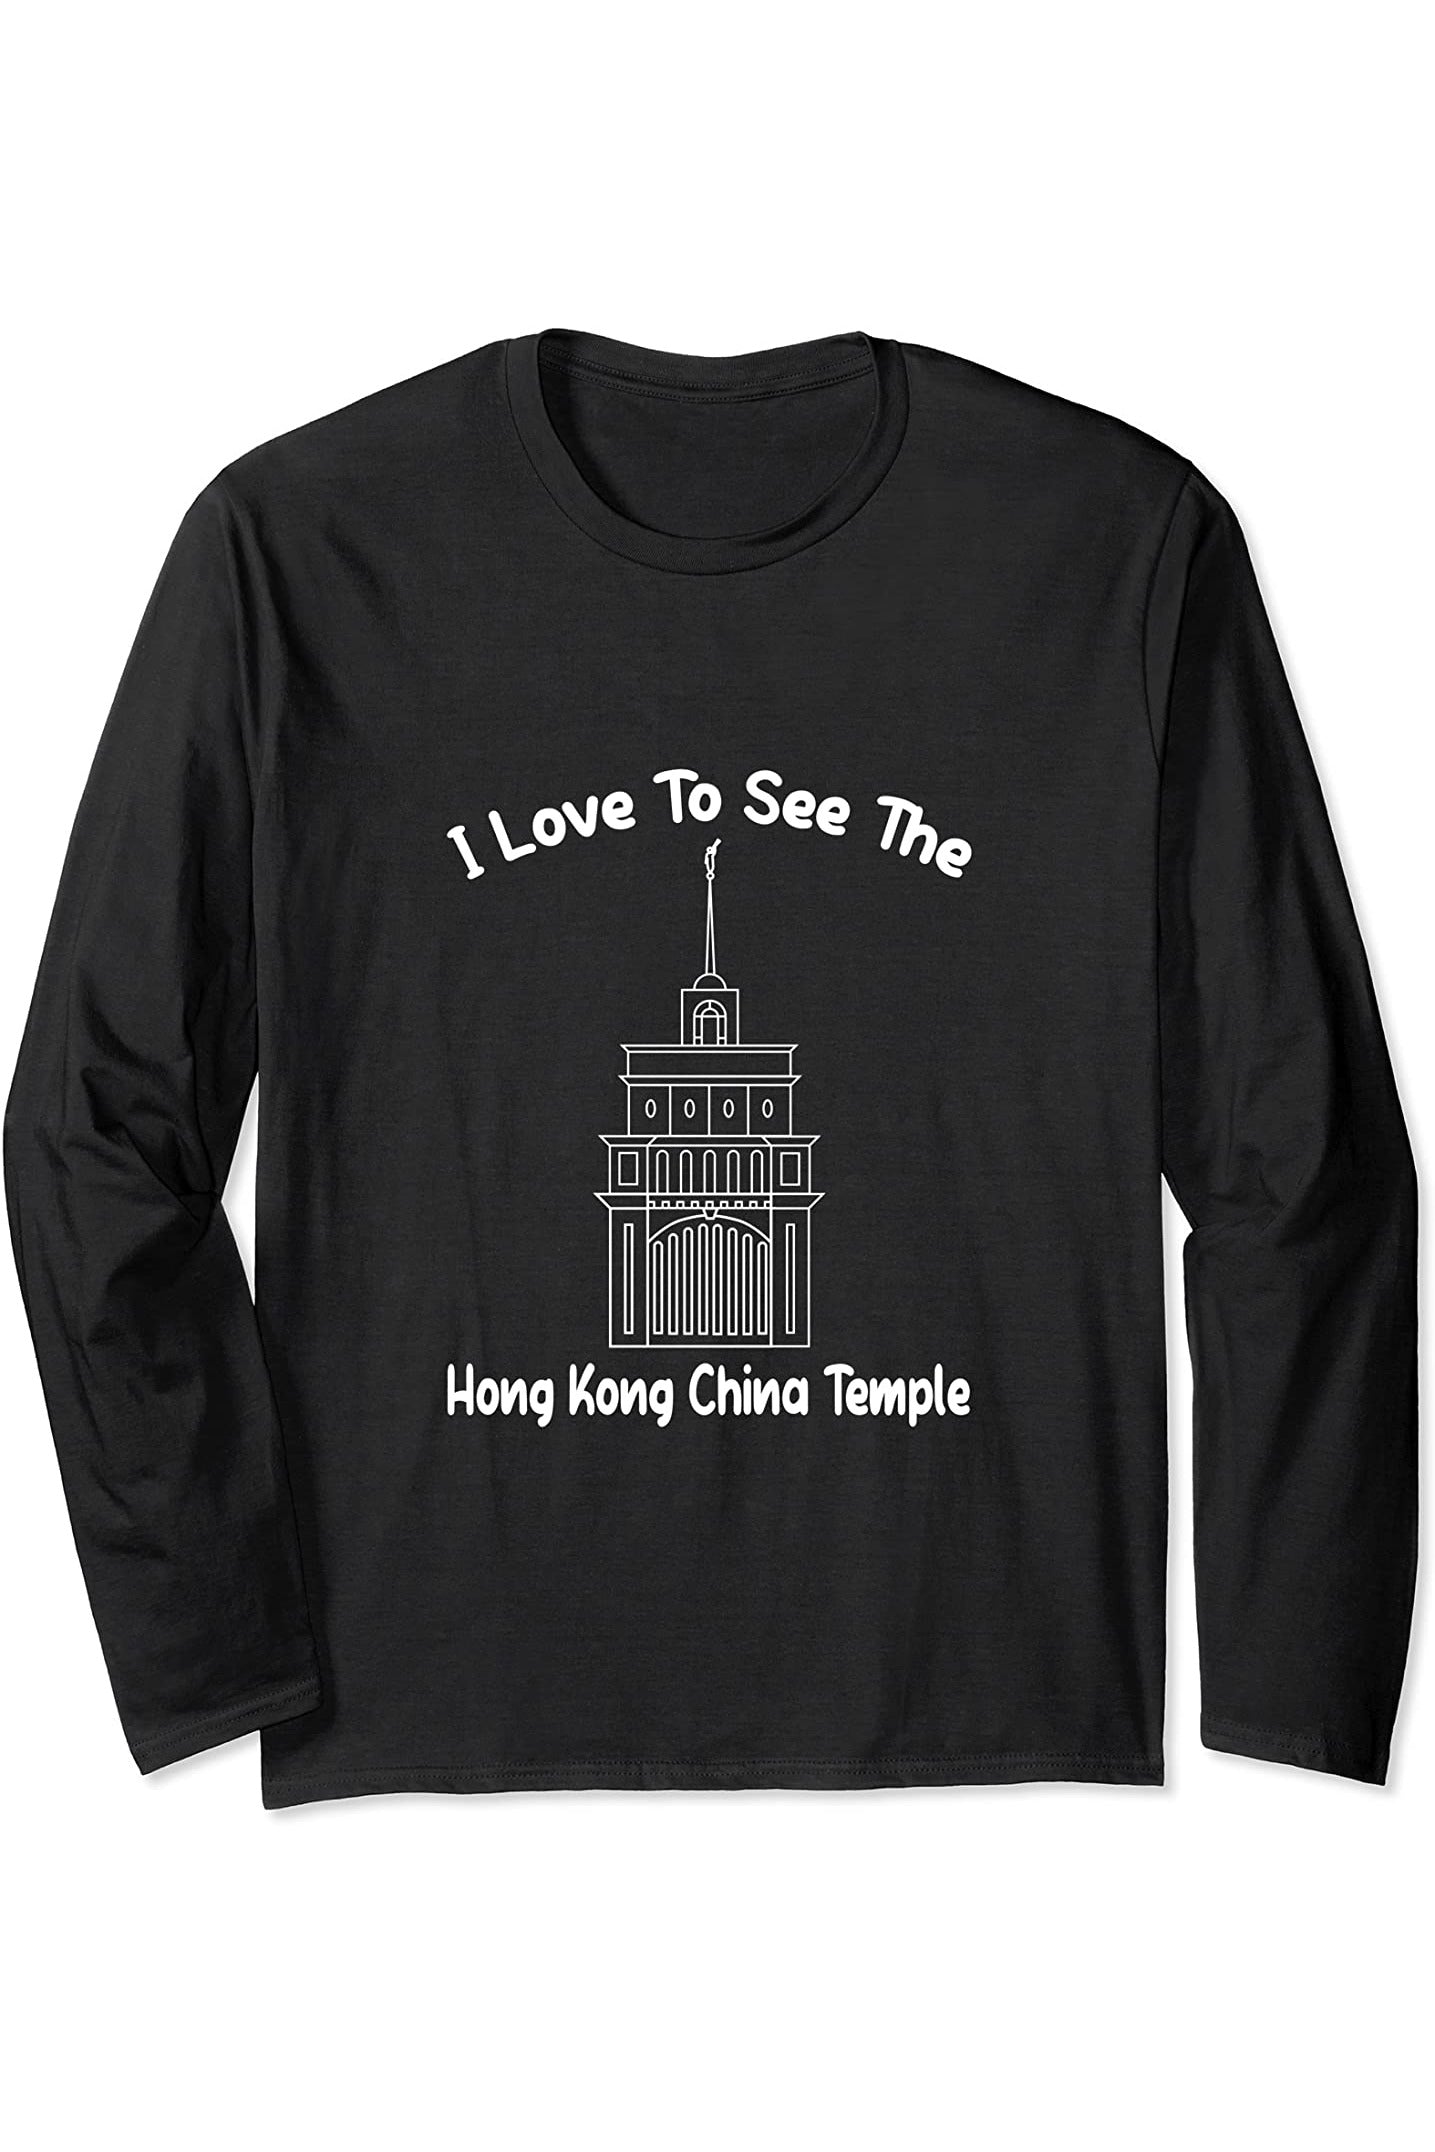 Hong Kong China Temple Long Sleeve T-Shirt - Primary Style (English) US